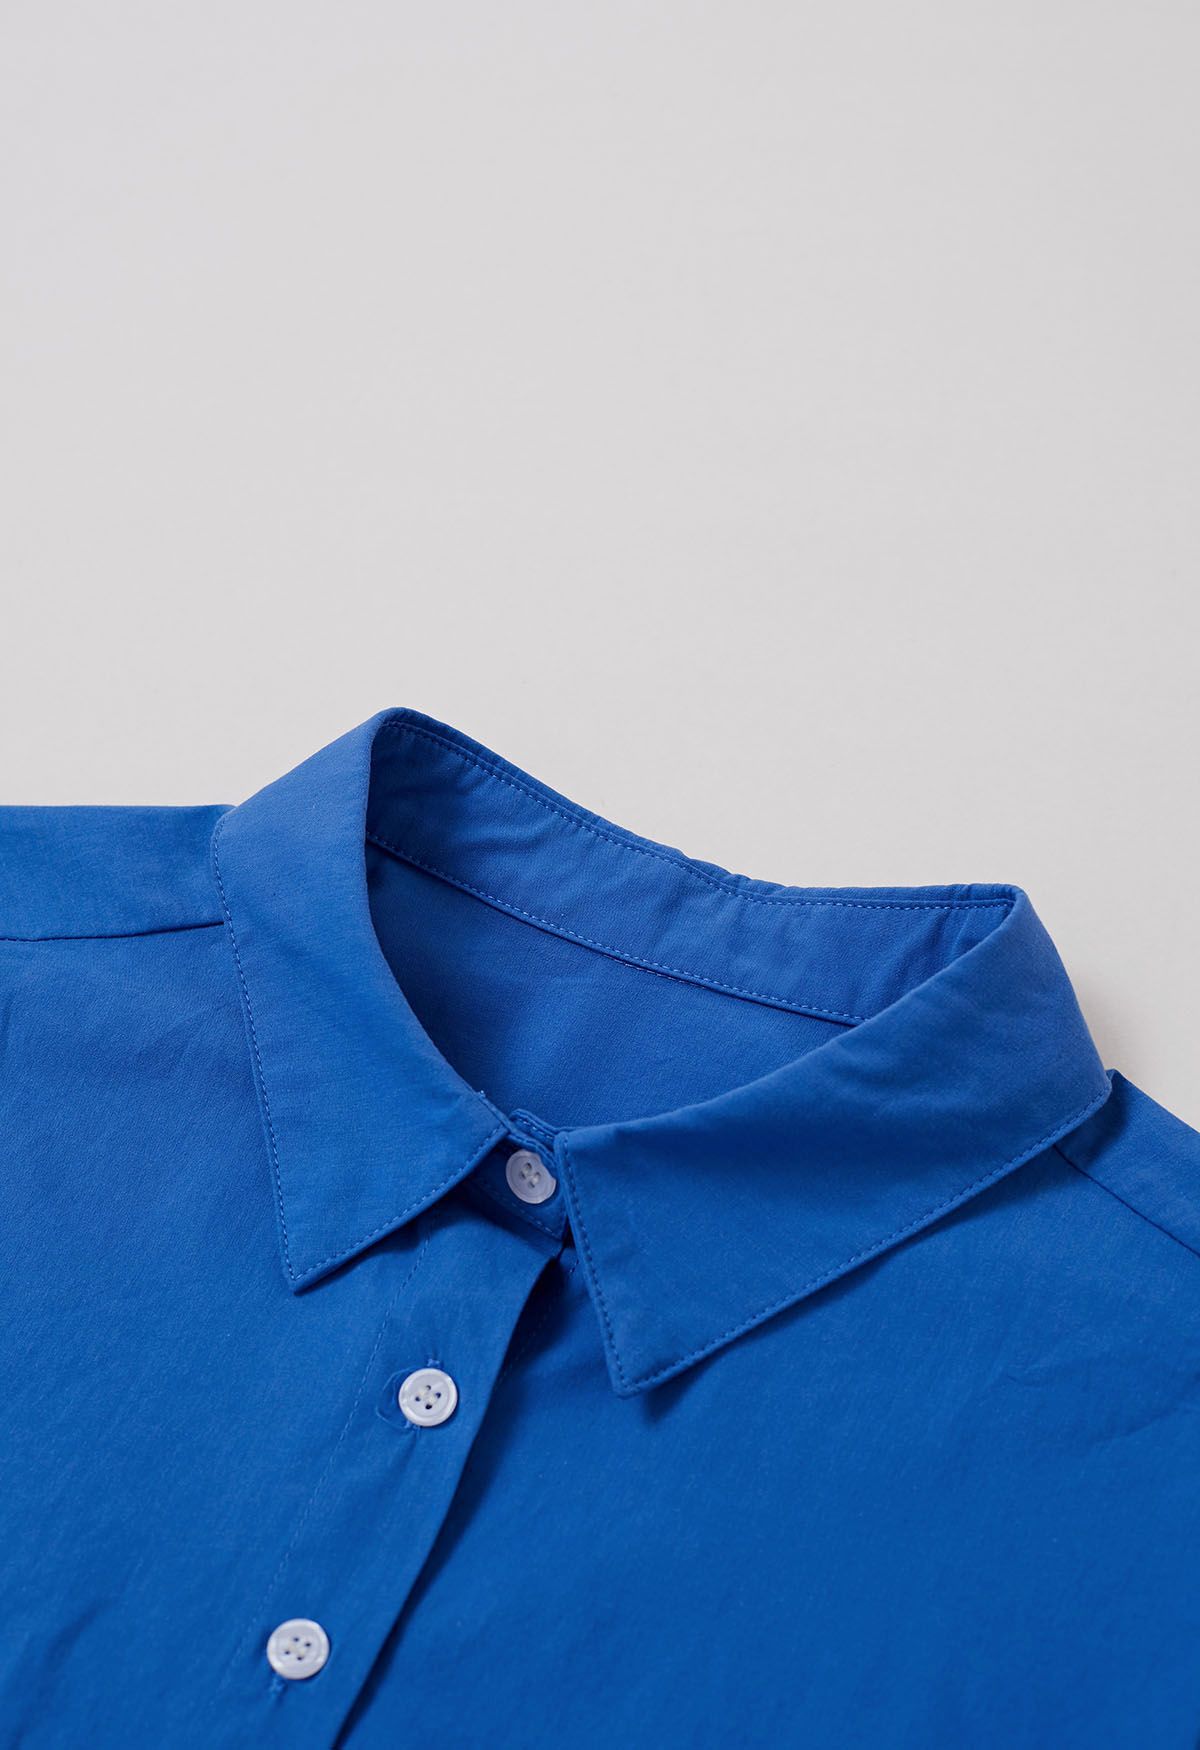 Chemise courte boutonnée chic en bleu